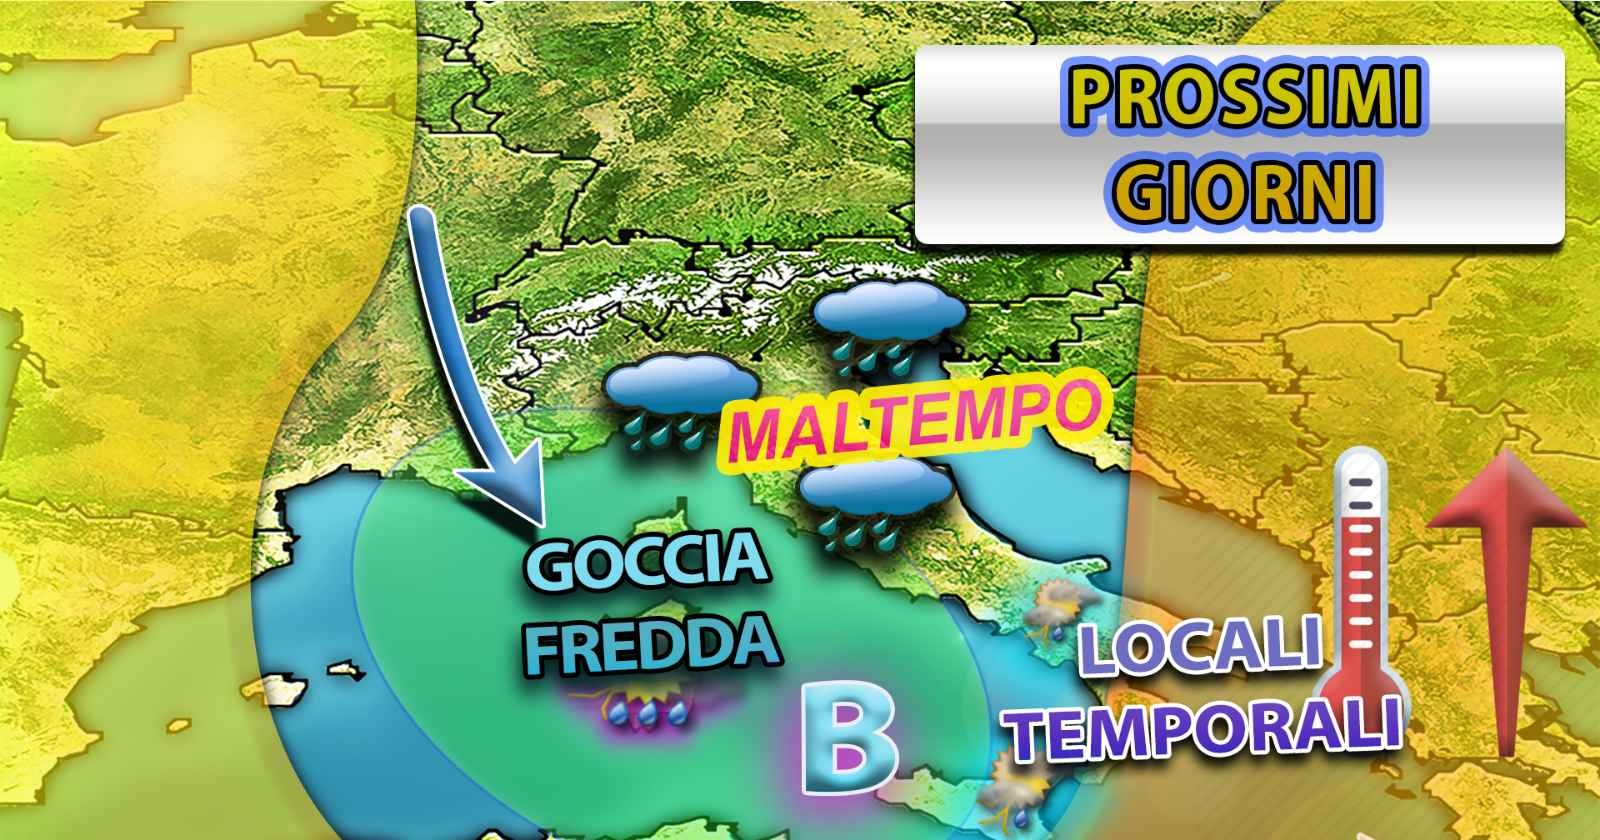 METEO - IRRUZIONE di MALTEMPO terrà sotto scacco l'ITALIA fino almeno al WEEKEND, i dettagli